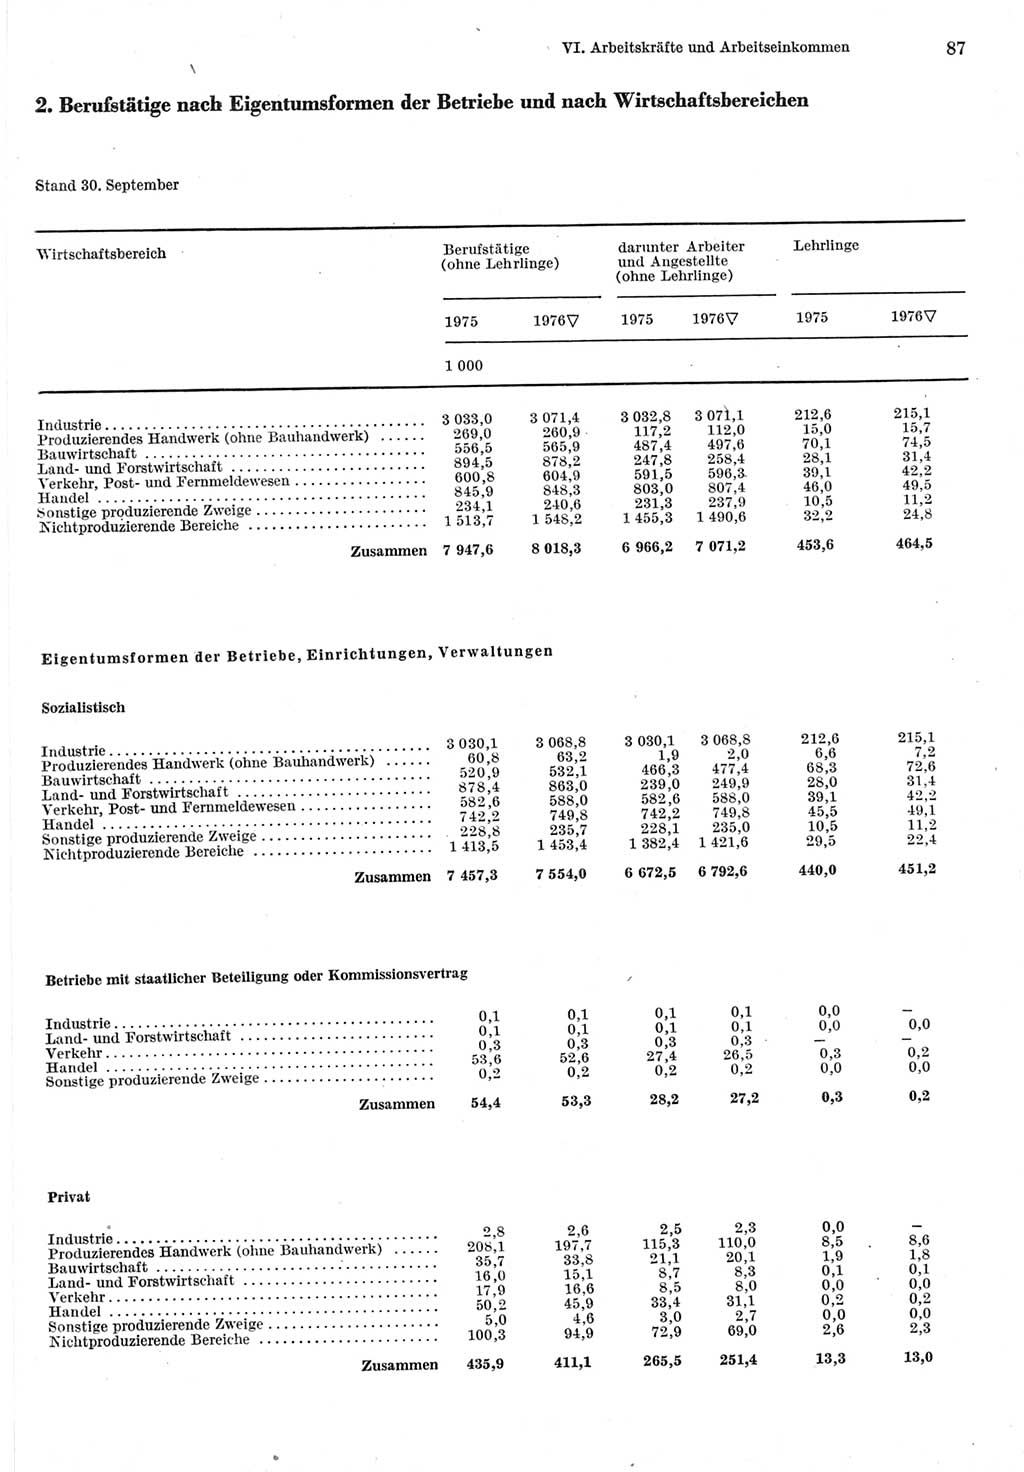 Statistisches Jahrbuch der Deutschen Demokratischen Republik (DDR) 1977, Seite 87 (Stat. Jb. DDR 1977, S. 87)